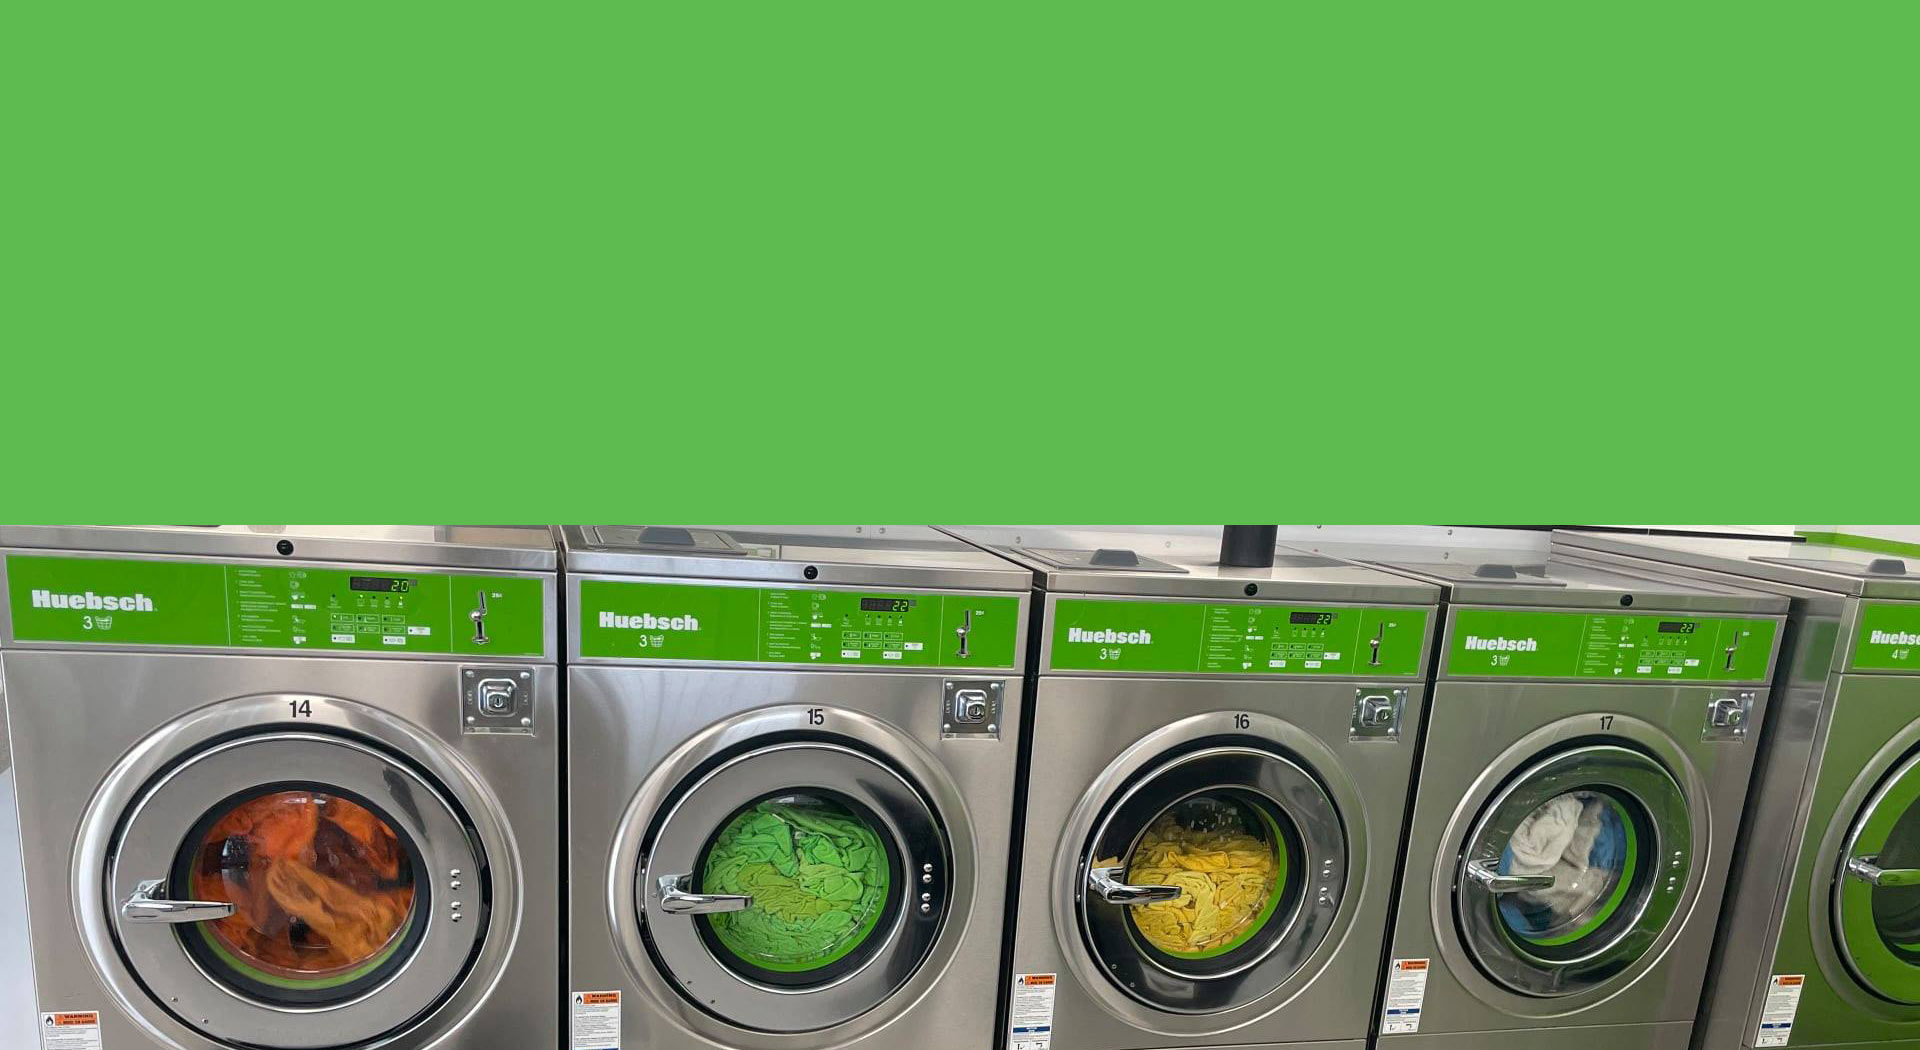 Durham Laundromat Photo of Washers